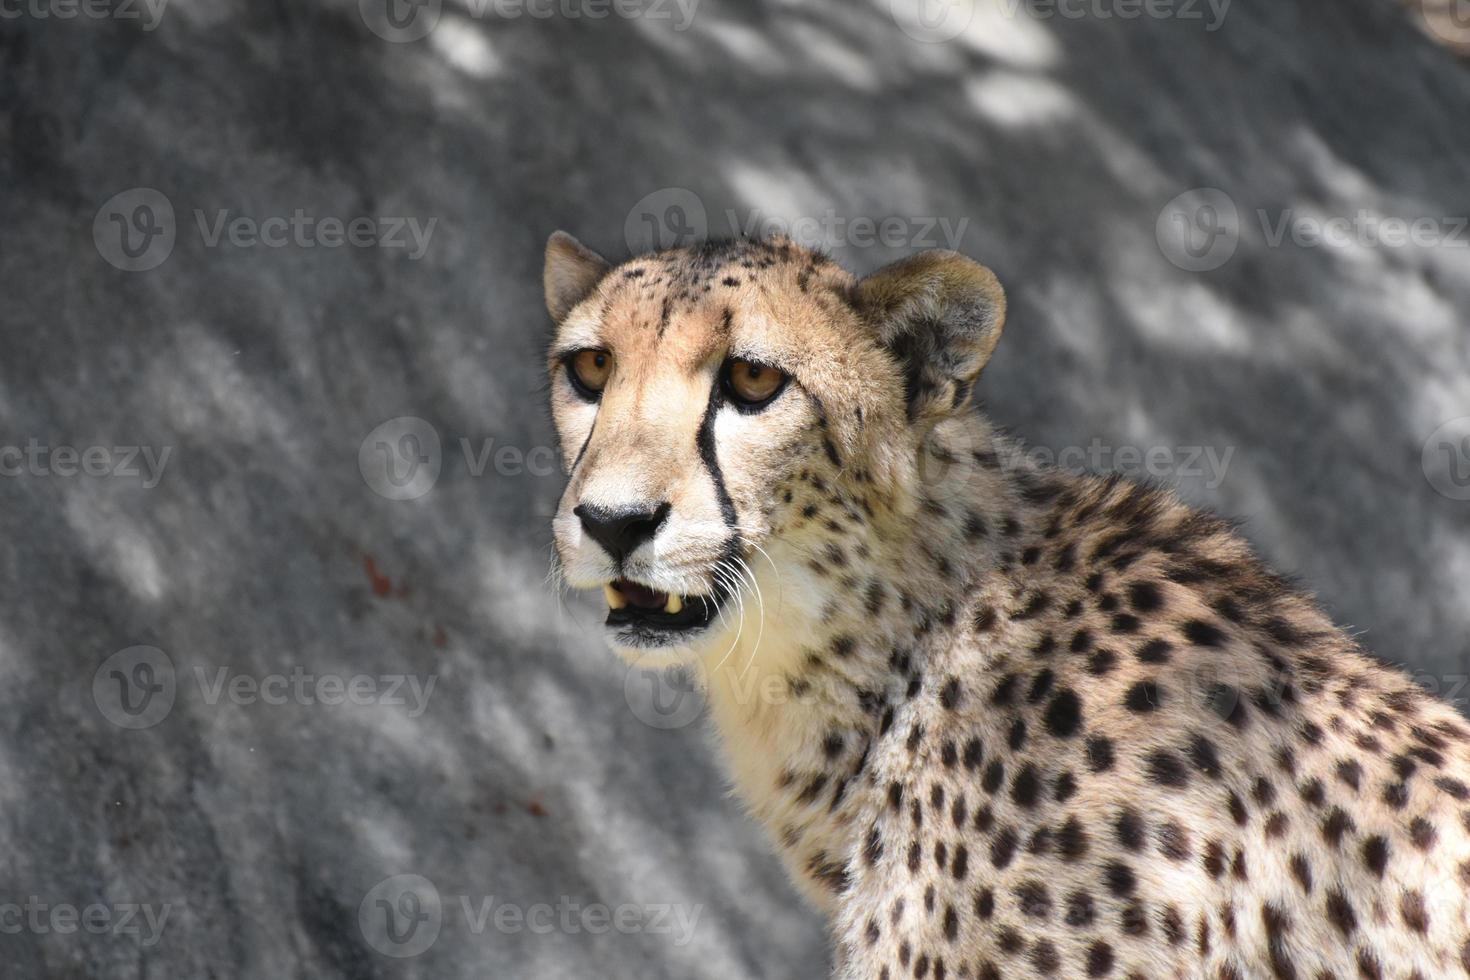 Up Close Look at the Face of a Panting Cheetah photo